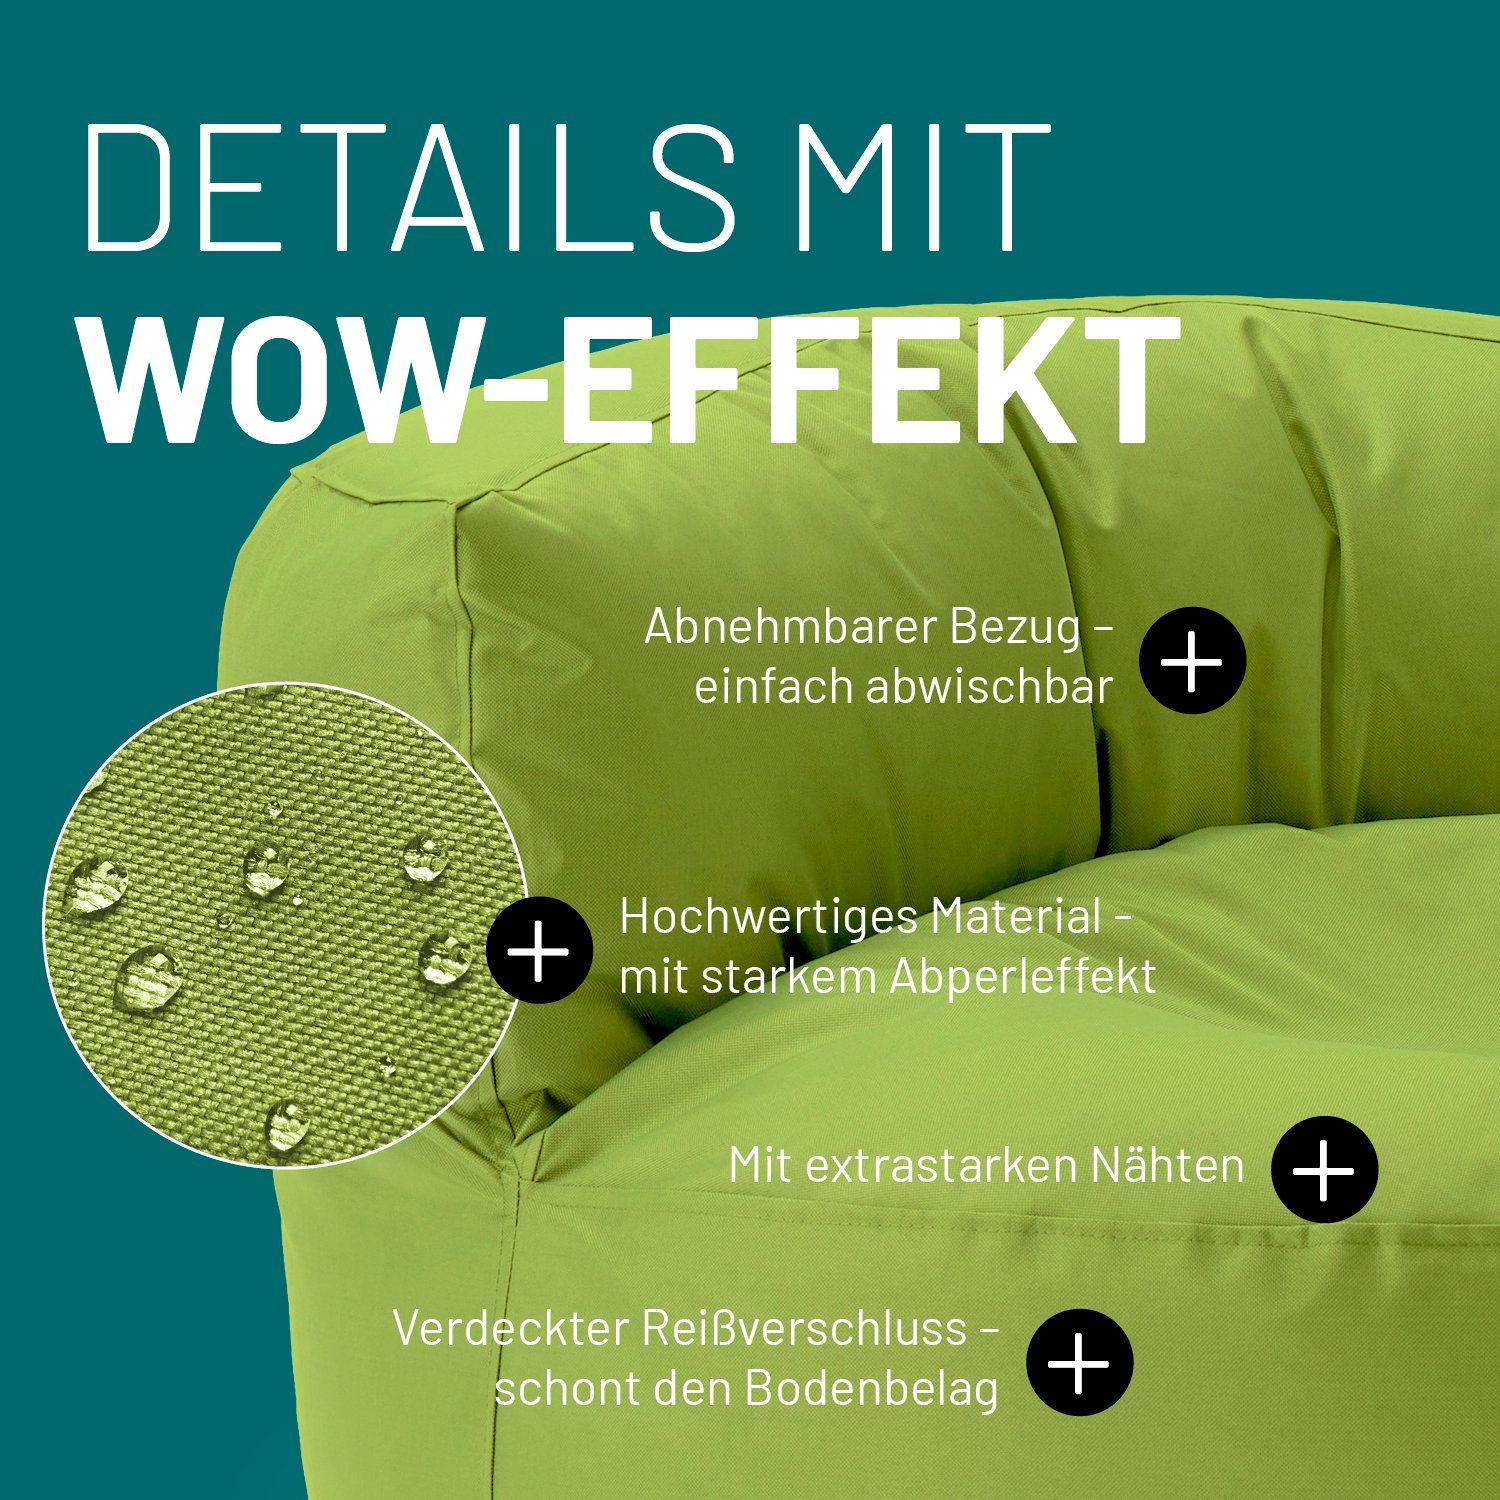 Lumaland grün 90x90x50cm Bean Sitzsack inkl. Bag Couch Outdoor Sitzkissen In-& Rückenlehne Round Sofa Lounge,